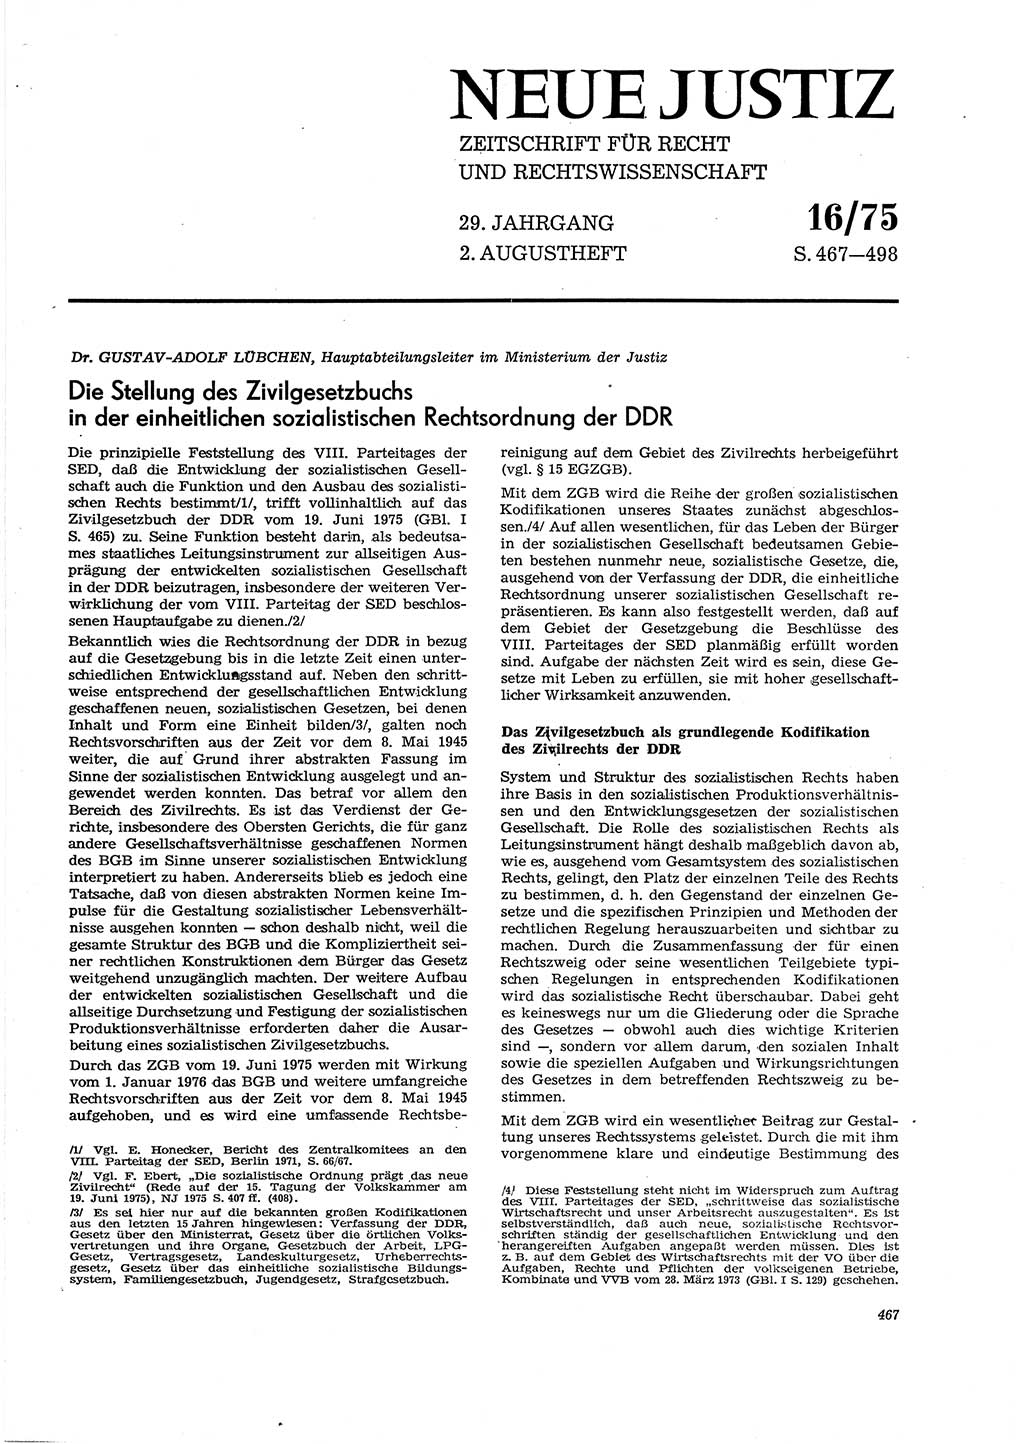 Neue Justiz (NJ), Zeitschrift für Recht und Rechtswissenschaft [Deutsche Demokratische Republik (DDR)], 29. Jahrgang 1975, Seite 467 (NJ DDR 1975, S. 467)